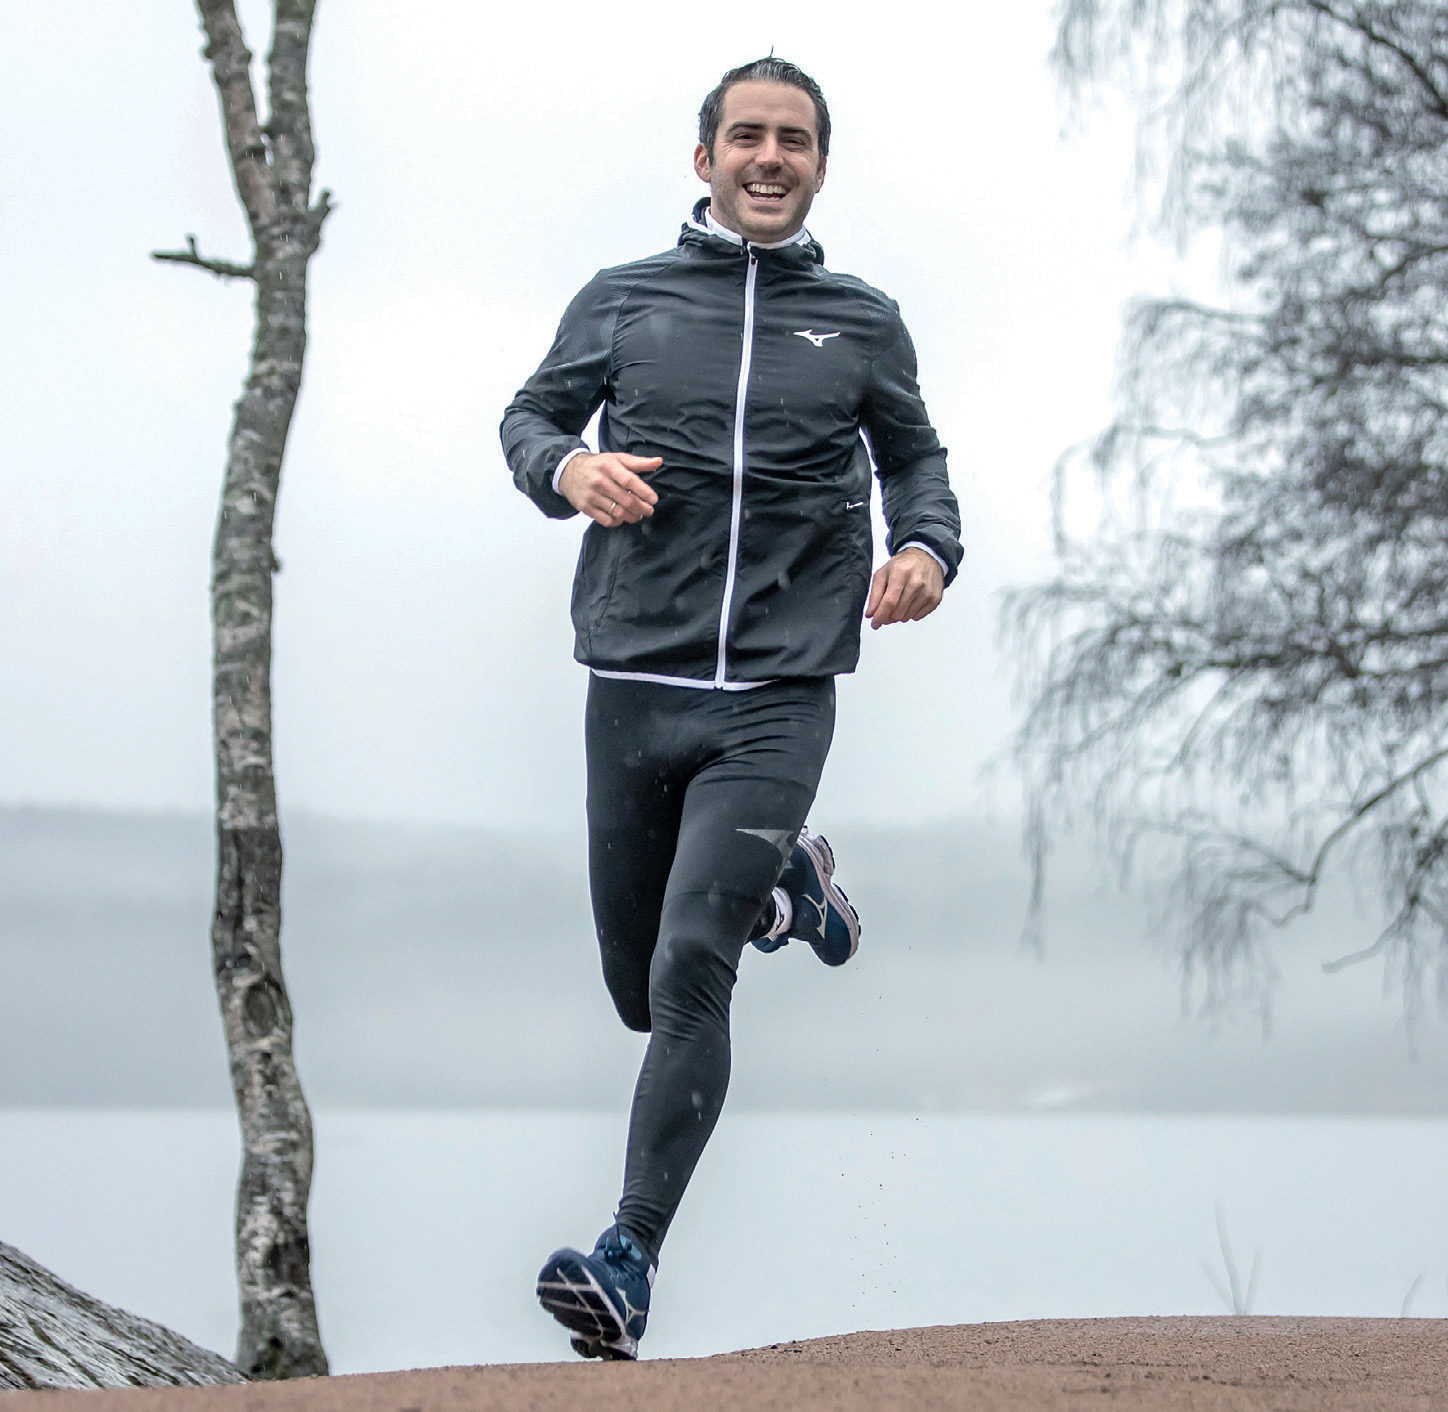 Tester 1 av pulsklokker: Lars Zachariassen er fysioterapeut og kognitiv terapeut med idrettsutdannelse. Han elsker å trene, gjerne 5-6 dager i uka, mest løping og triatlon. Han er gift og familiefar. Foto: Rune Helliesen